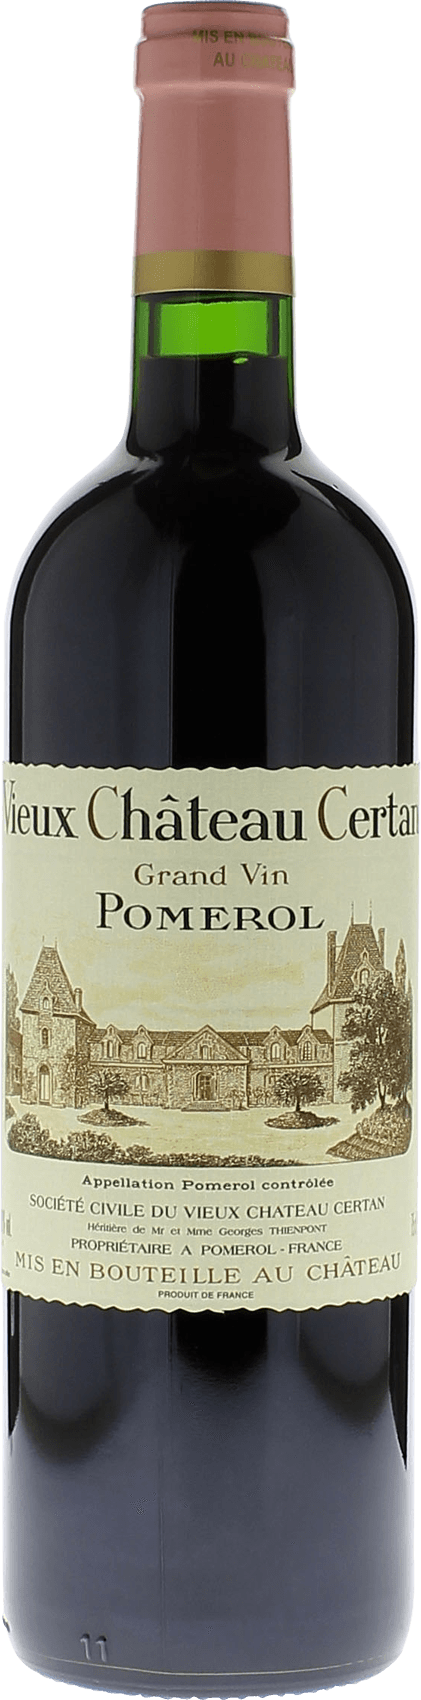 Vieux chteau  certan 2014  Pomerol, Bordeaux rouge